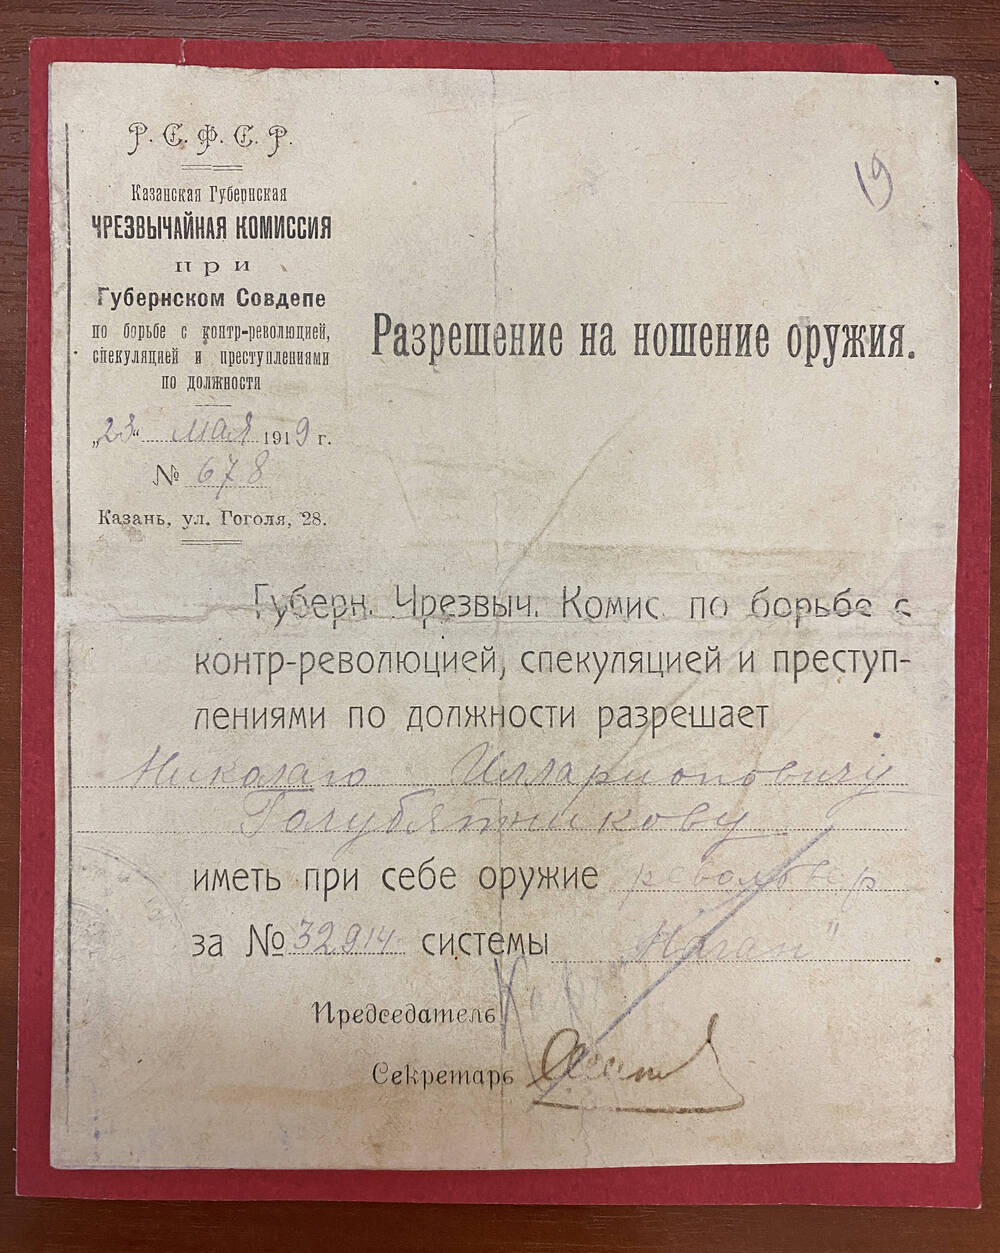 Разрешение на ношение оружия № 678 от 23 мая 1919 г. Две подписи, печать